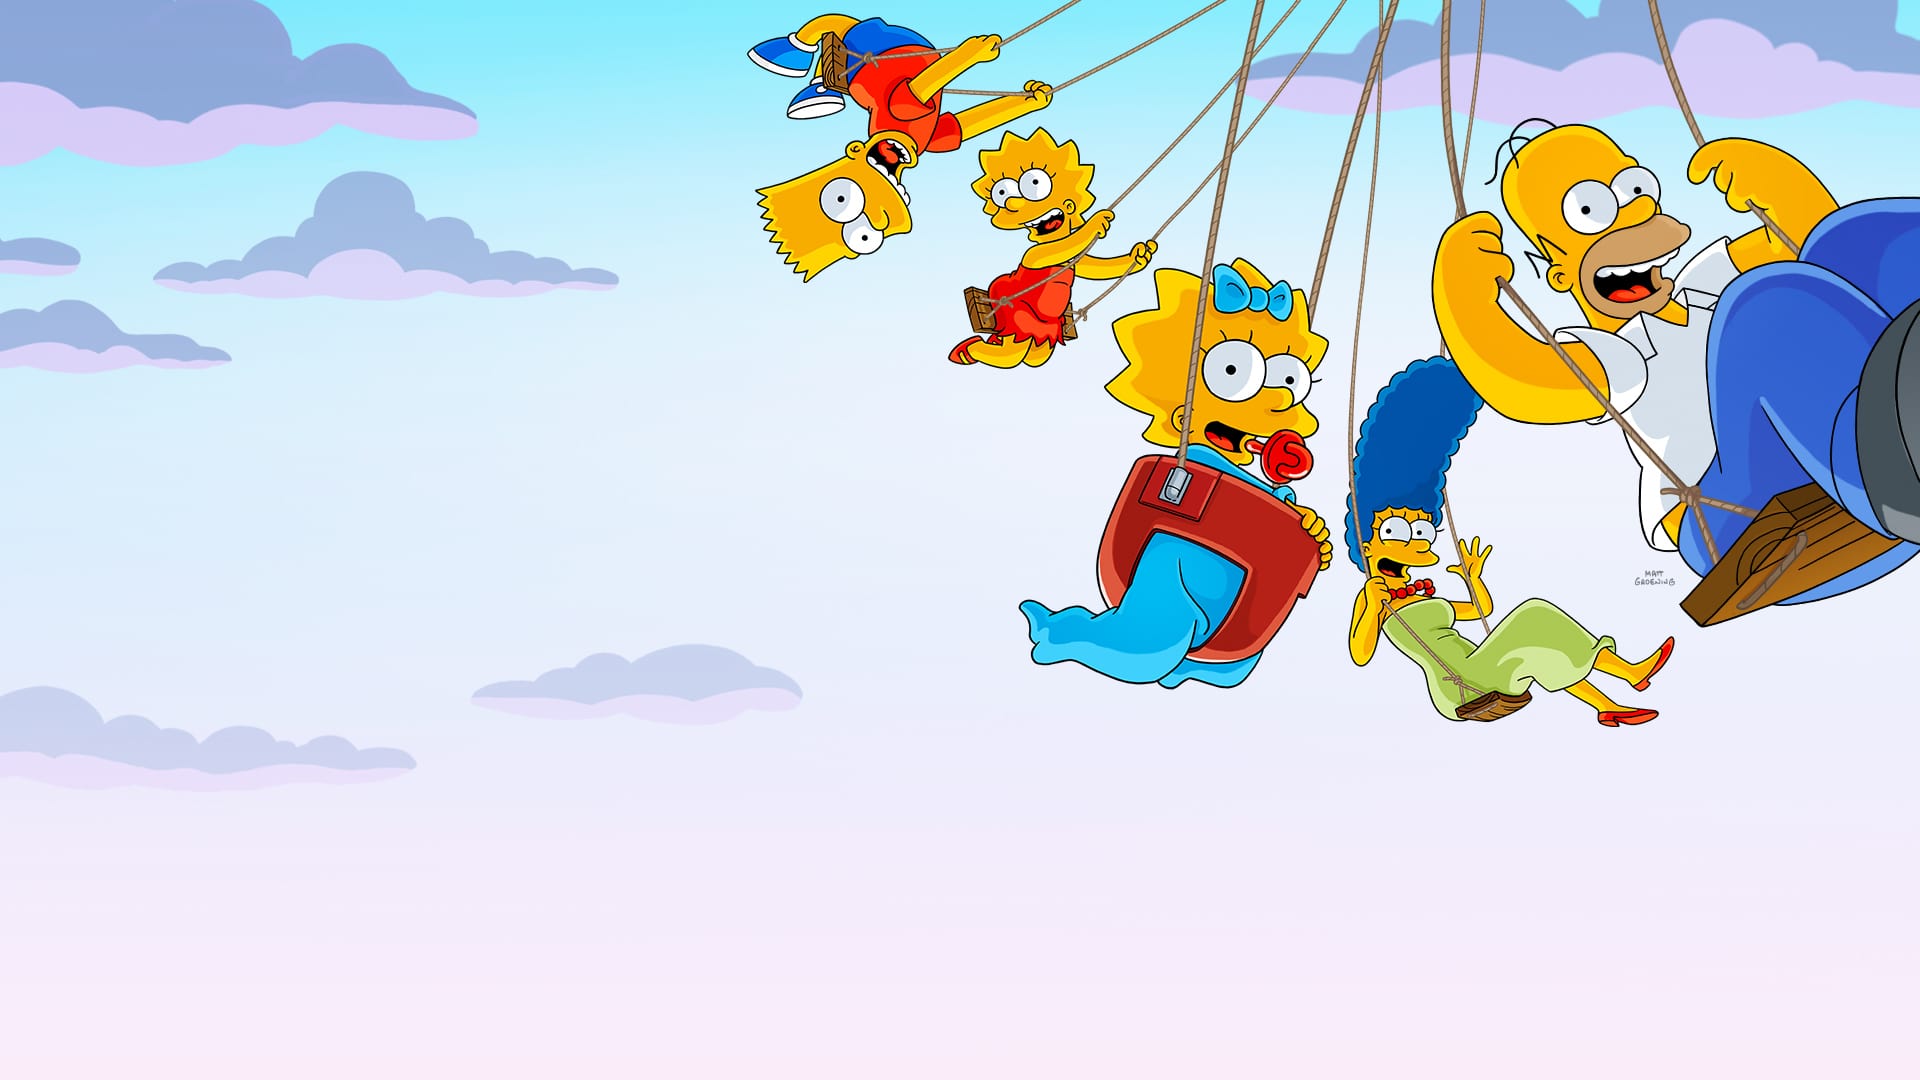 Fondos Fondos De Los Simpsons Fondo De Pantalla Simpson Y Fondos De Images